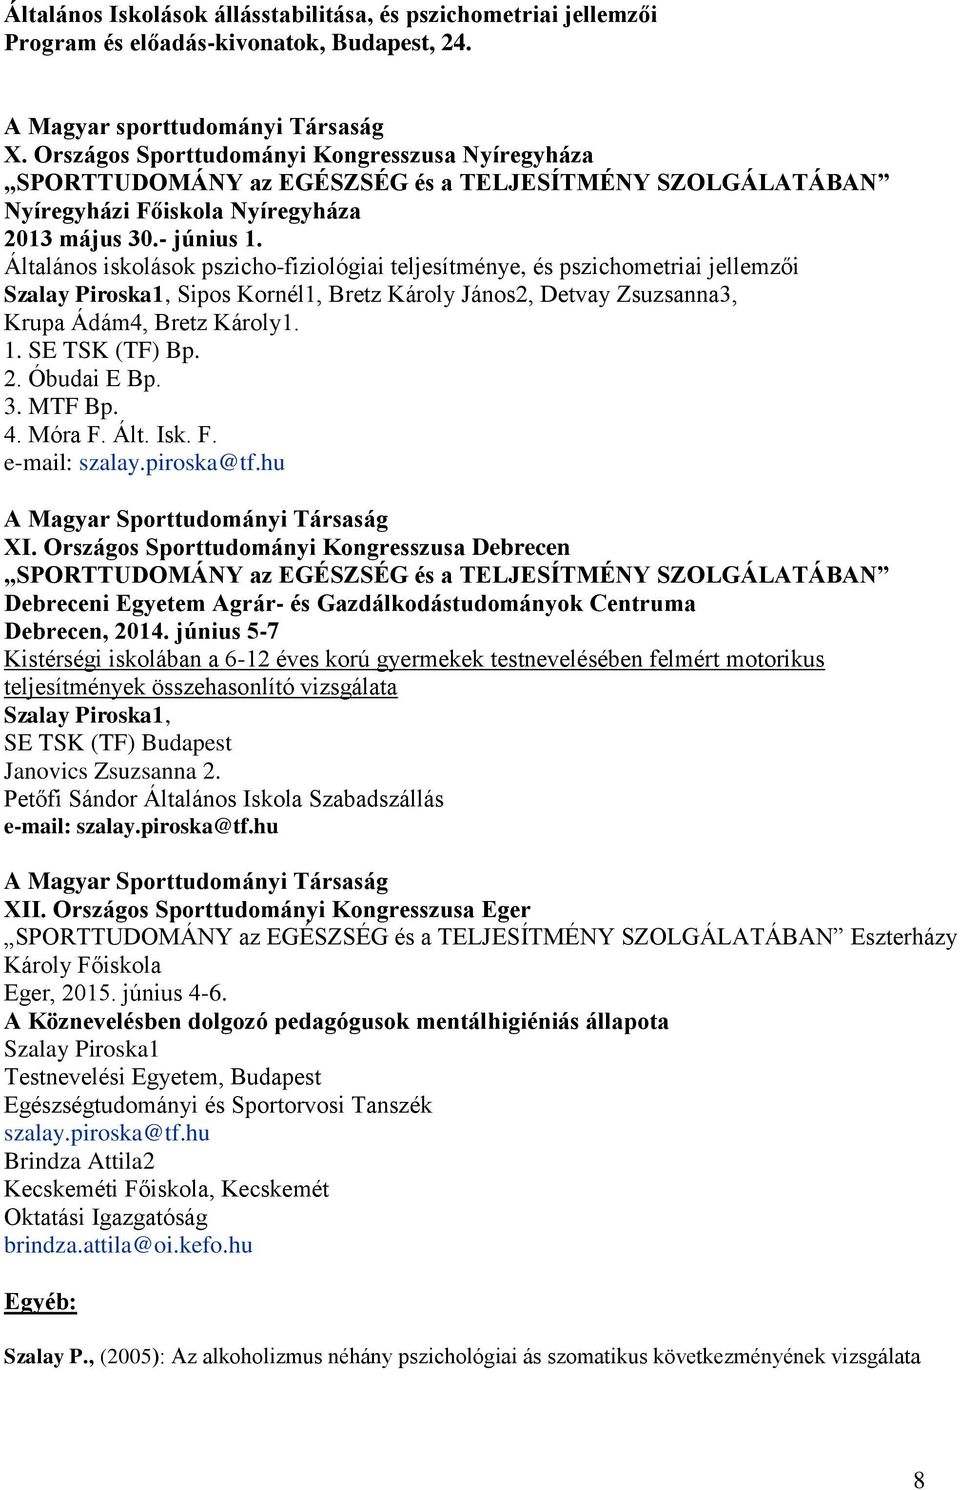 Általános iskolások pszicho-fiziológiai teljesítménye, és pszichometriai jellemzői Szalay Piroska1, Sipos Kornél1, Bretz Károly János2, Detvay Zsuzsanna3, Krupa Ádám4, Bretz Károly1. 1.